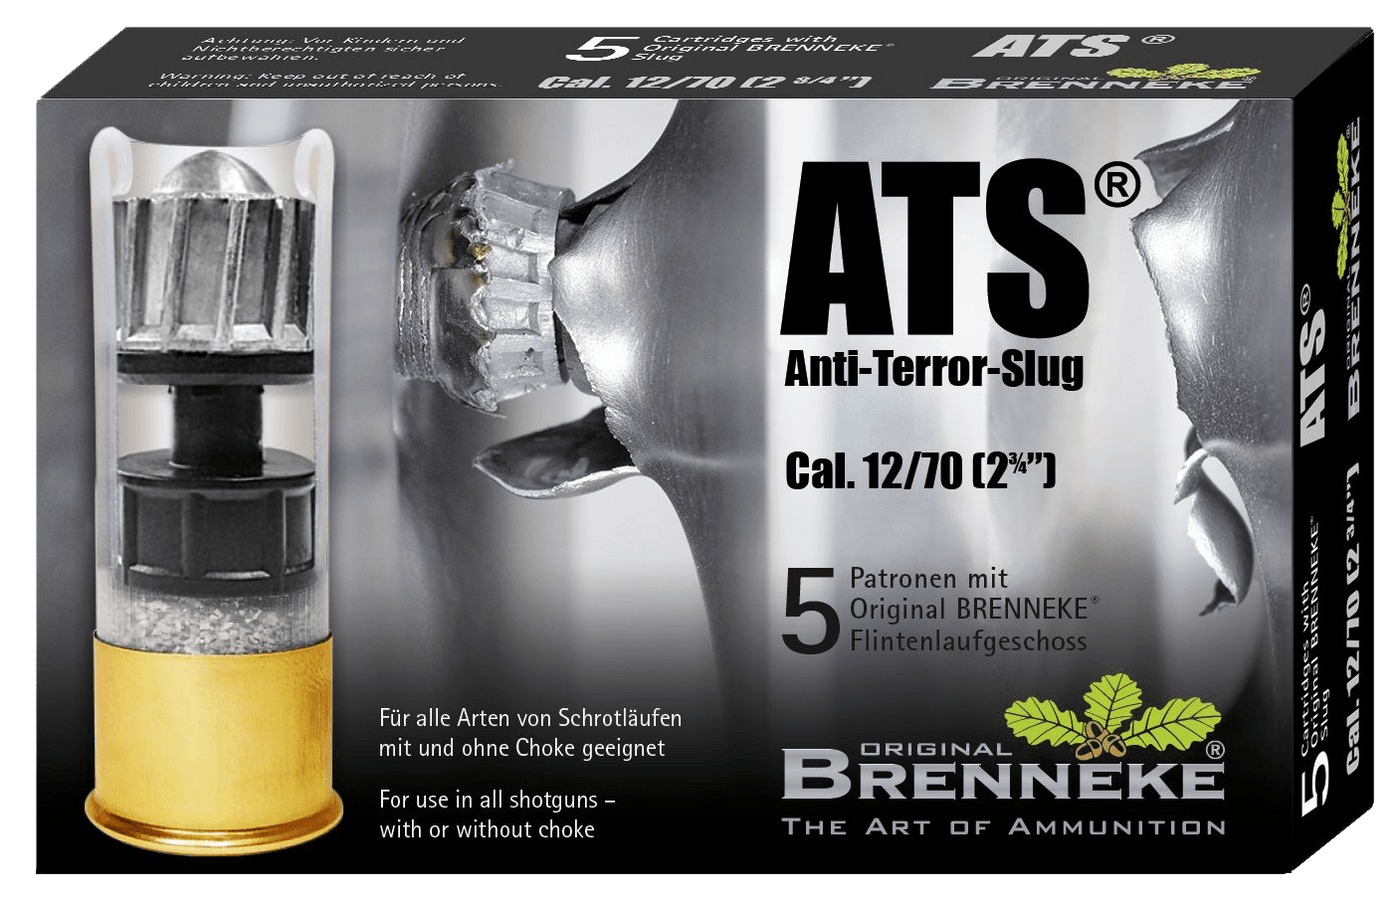 Brenneke Brenneke Anti-terror-slug, Br Sl122ats   Ats        12  23/4      1oz    5/50 Ammo